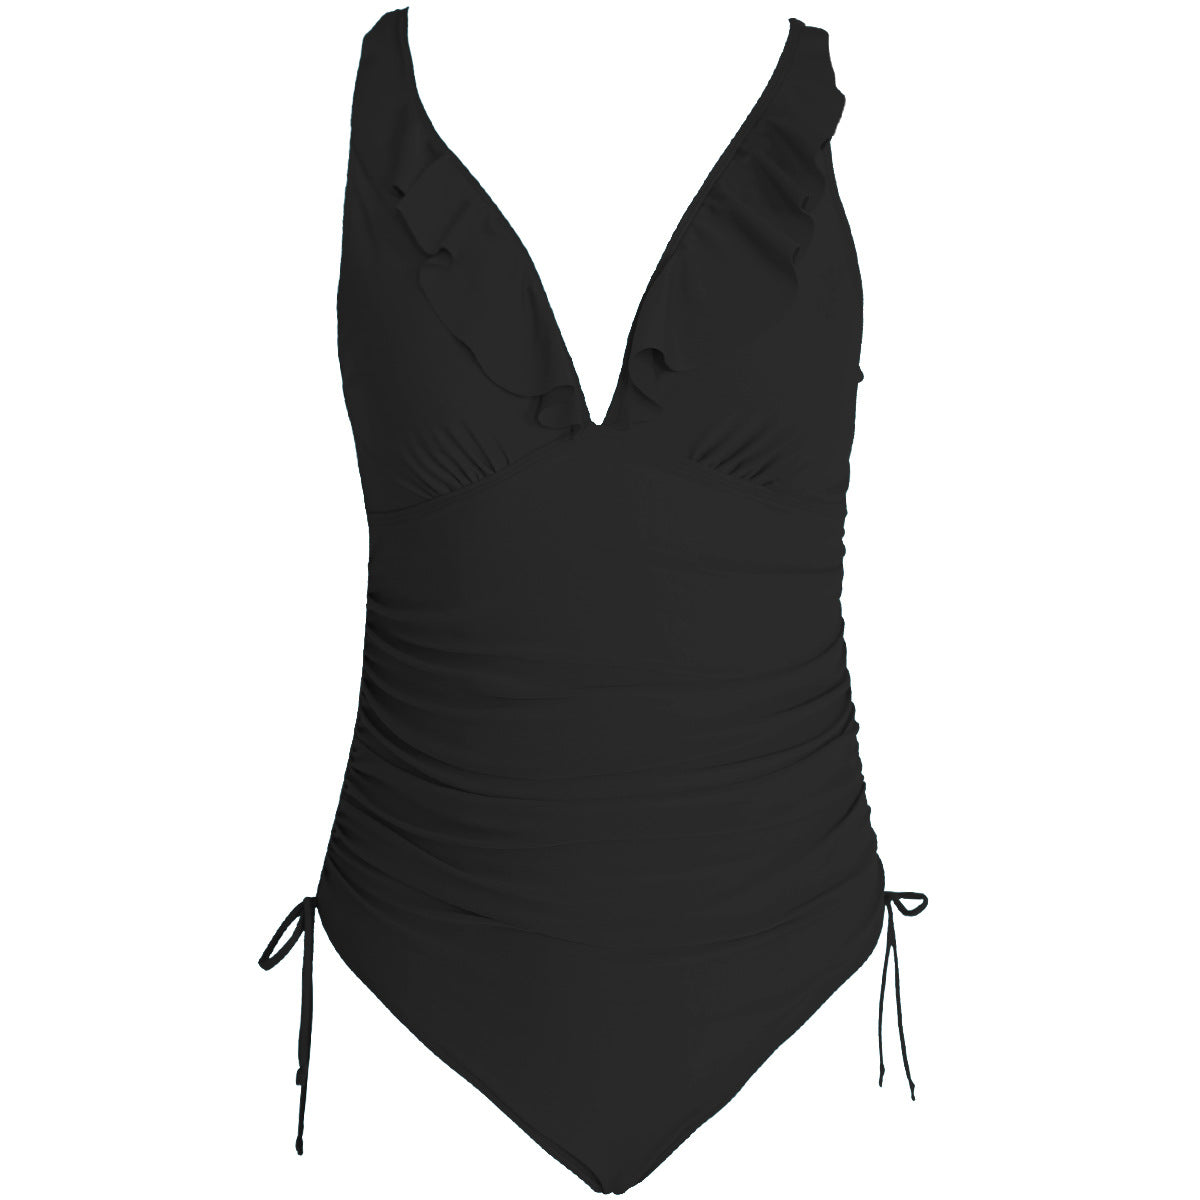 Sexy Ruffed One Piece Women Swimsuits-Swimwear-Black-S-Free Shipping Leatheretro